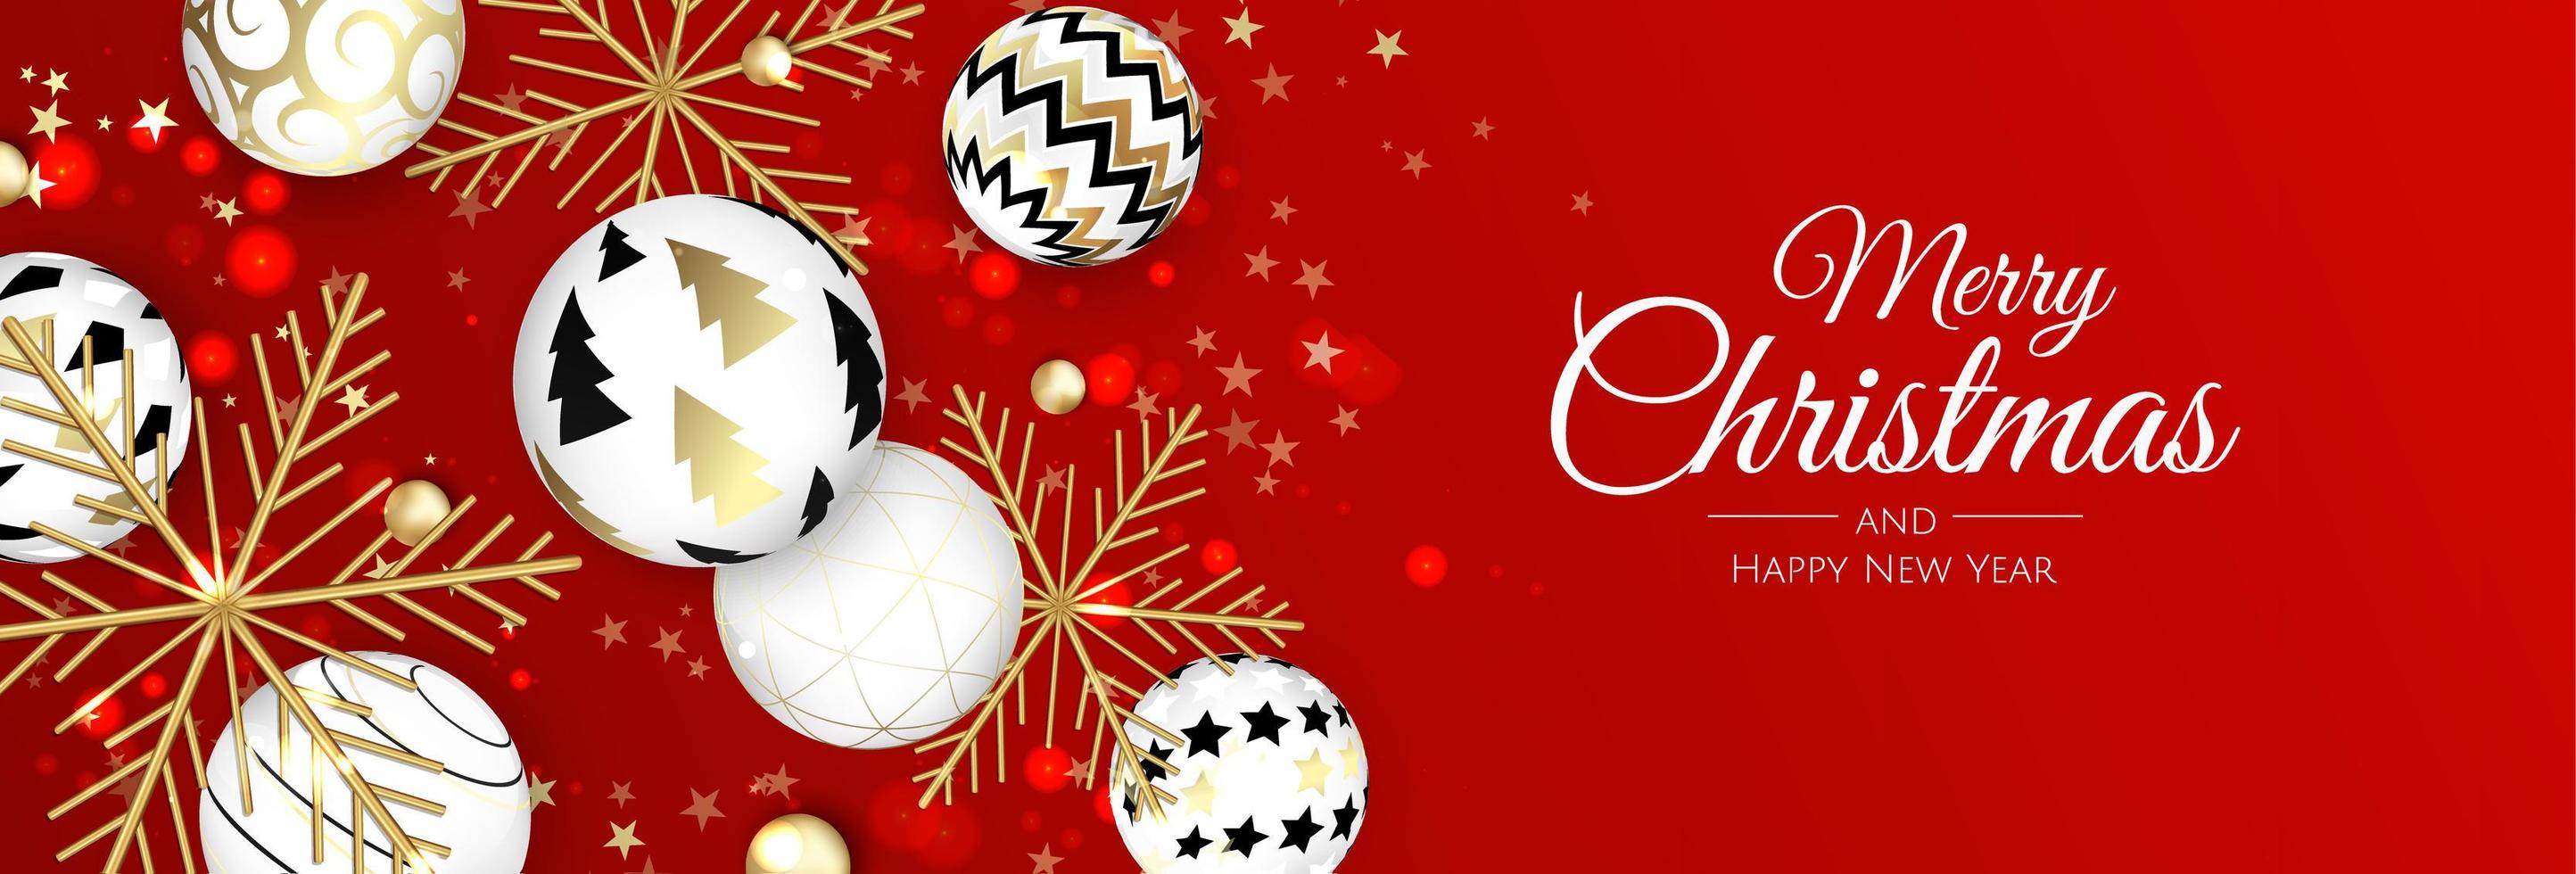 plantilla de banner de venta de feliz navidad. tarjeta de felicitación, pancarta, póster, encabezado para sitio web vector